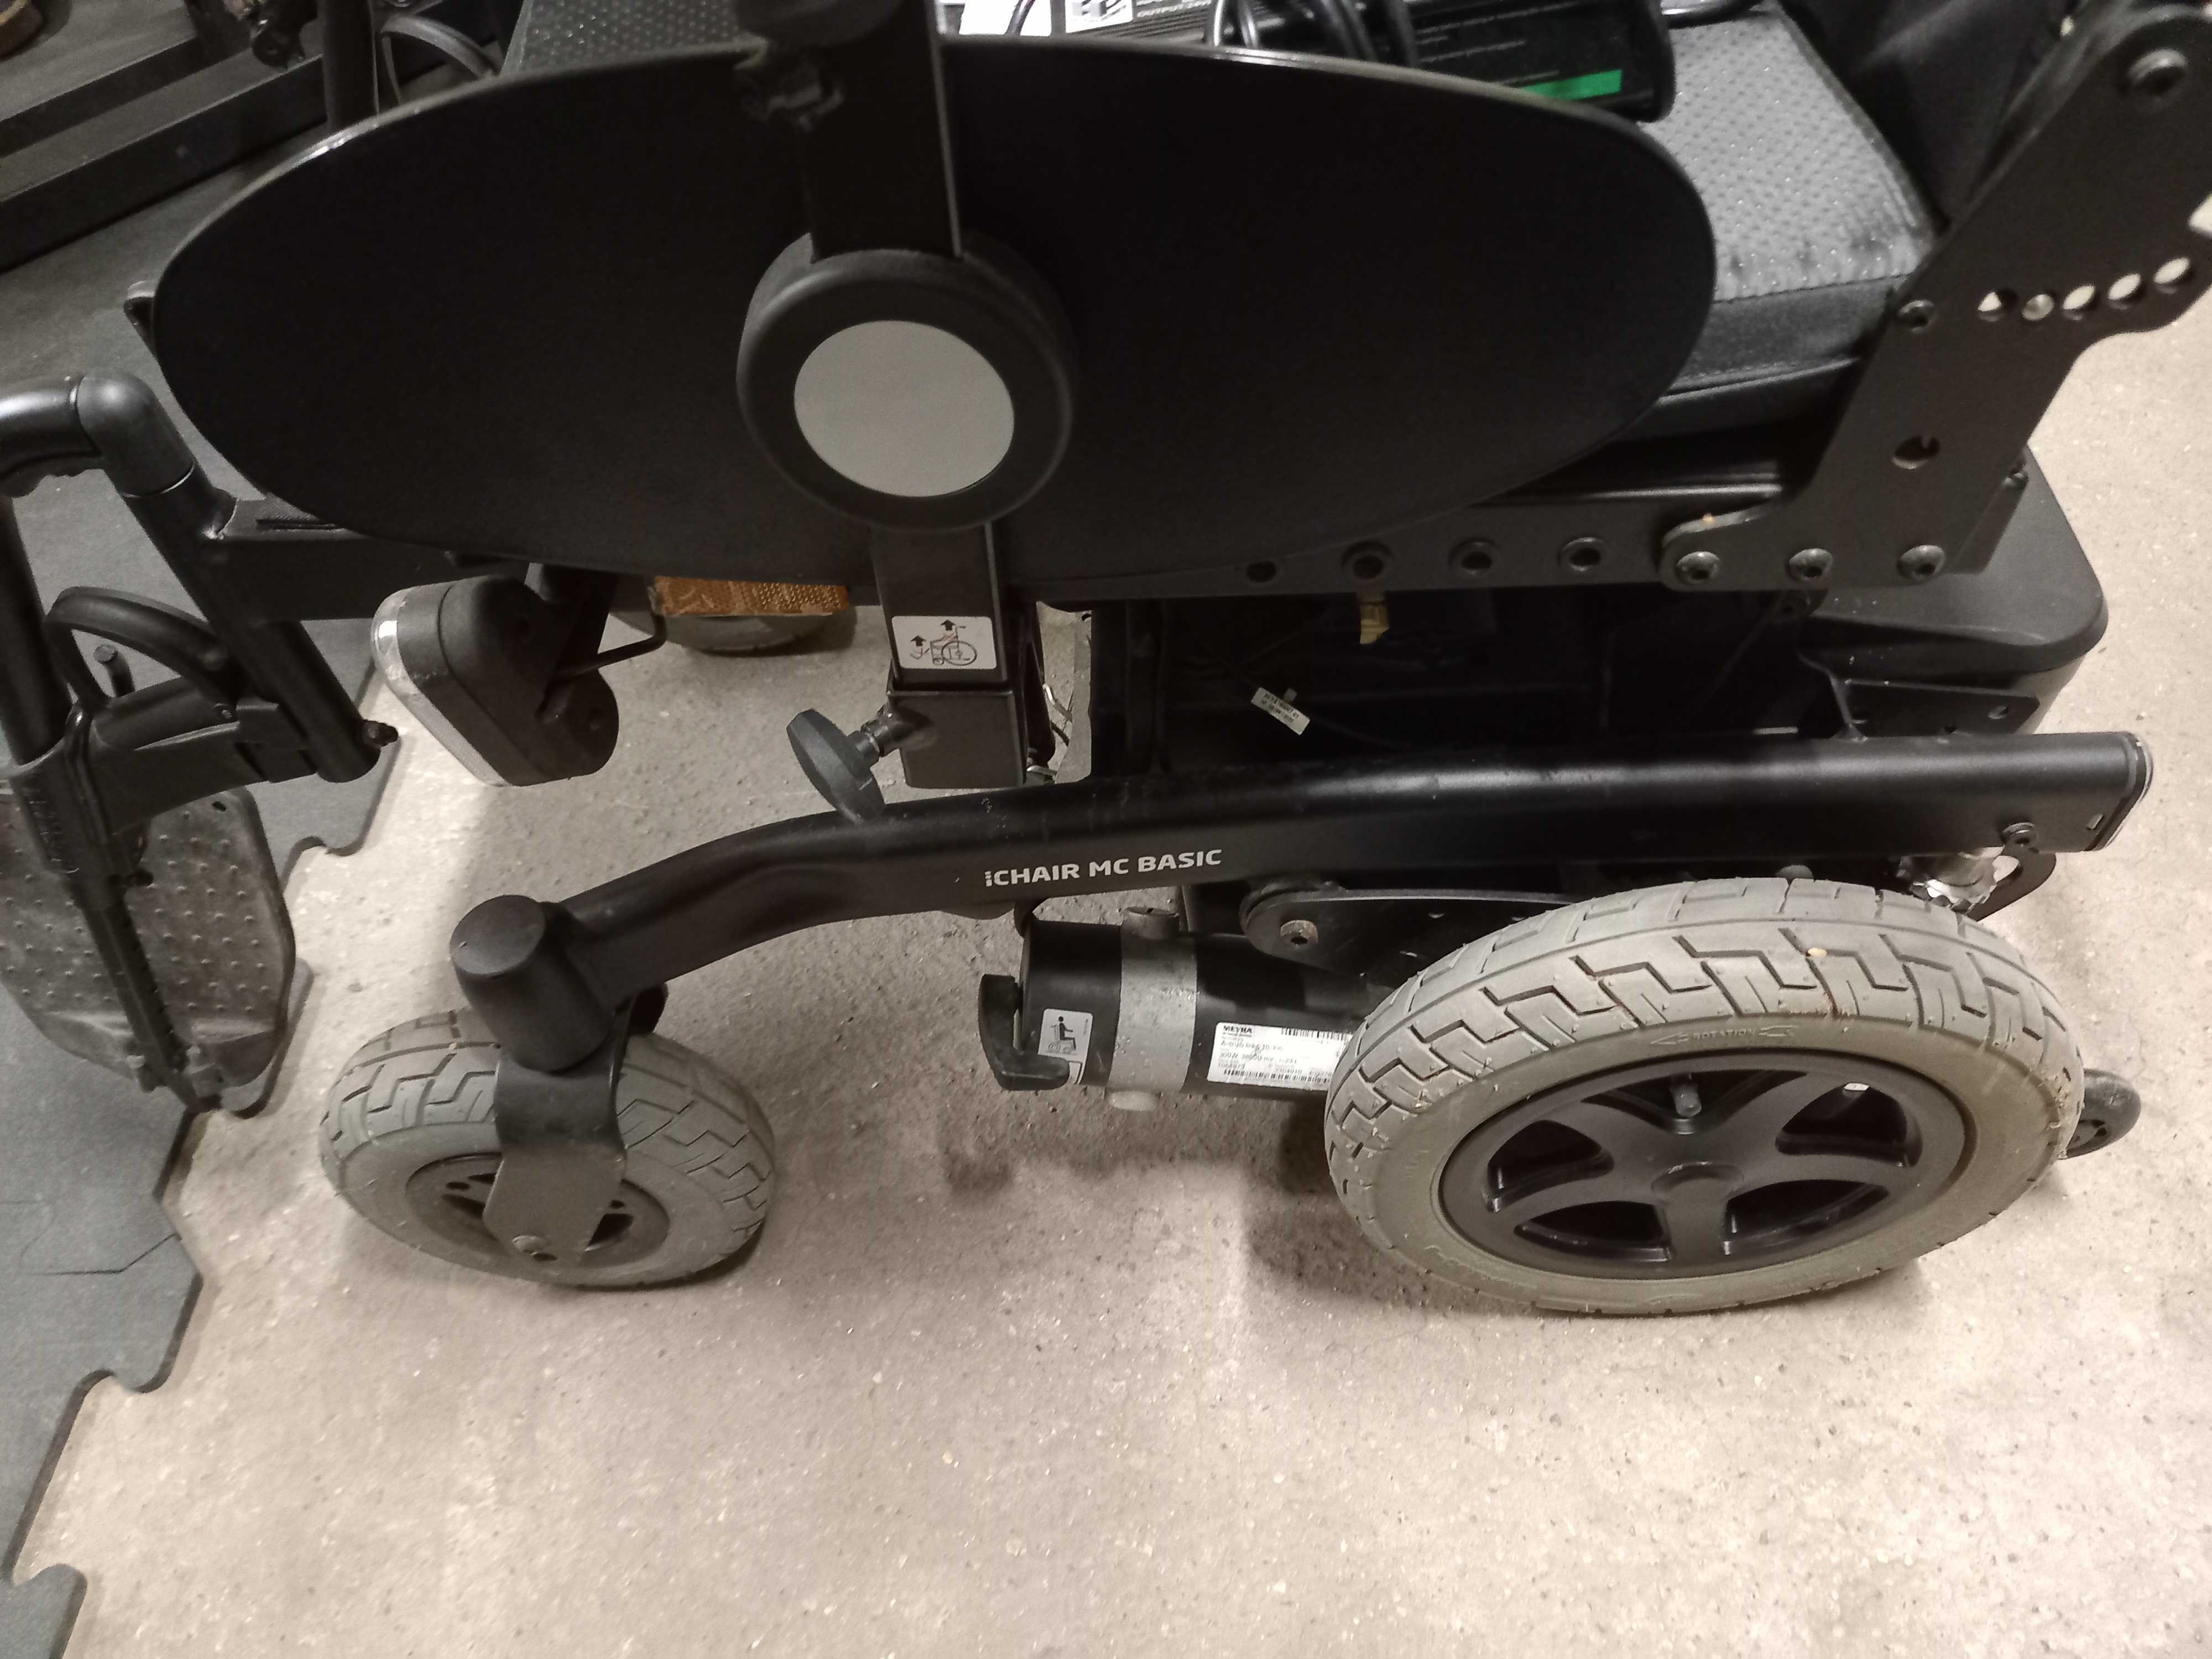 Wózek elektryczny inwalidzki